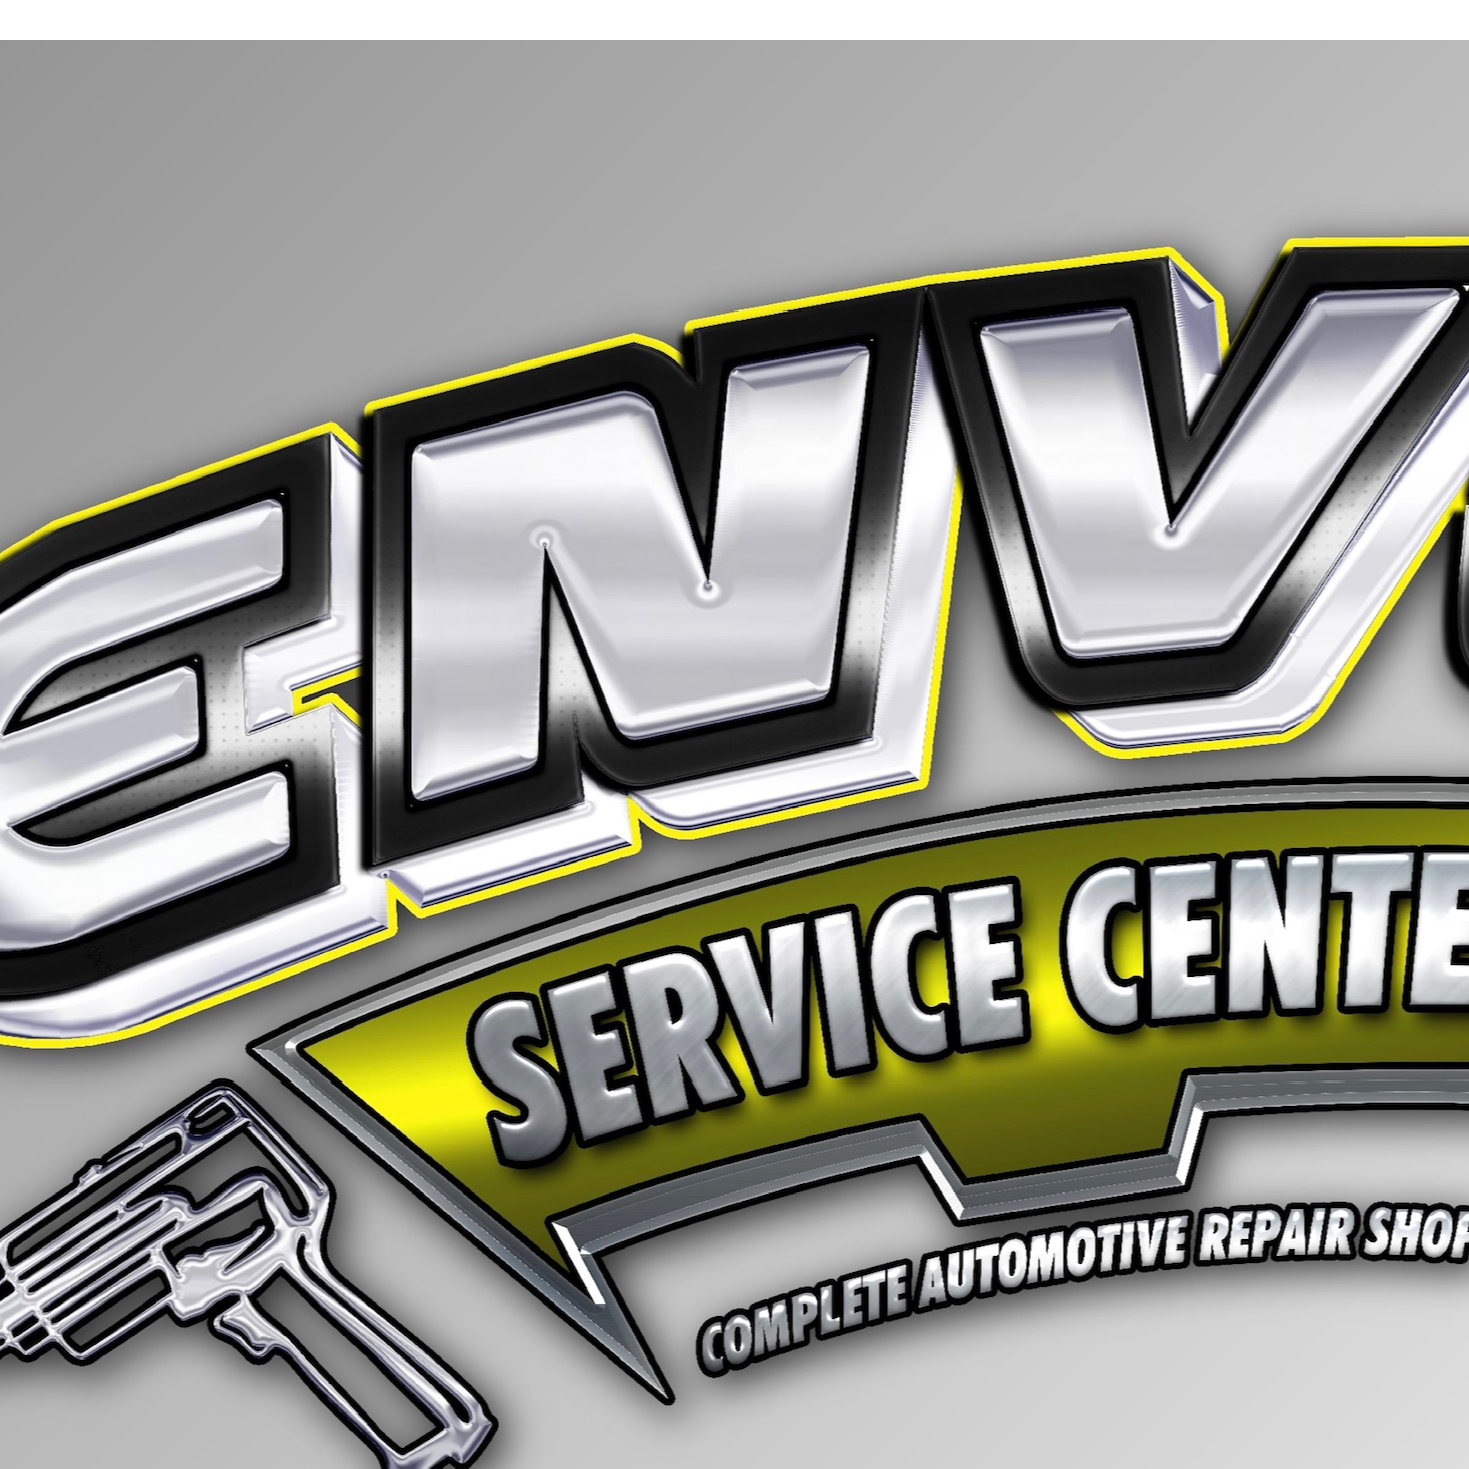 Envy service center logo